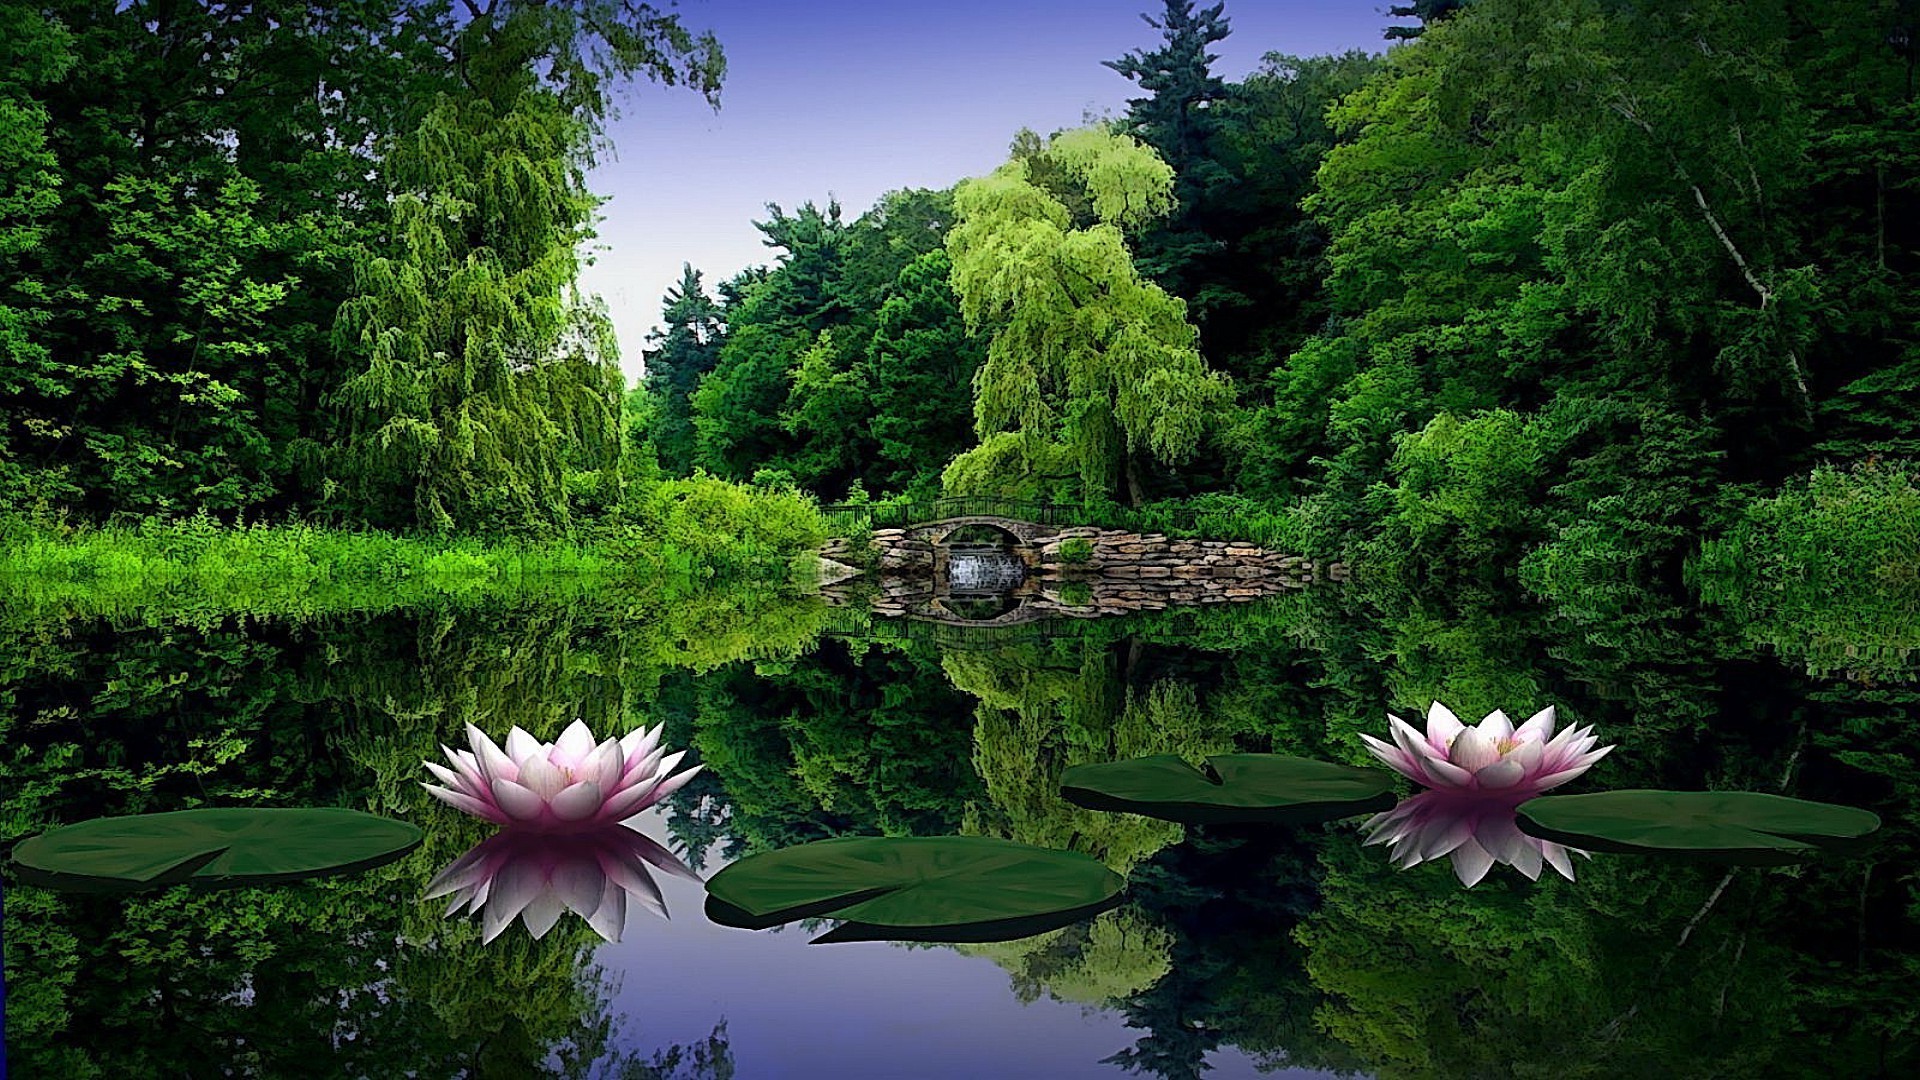 озера бассейн природа лето флора сад парк лист цветок красивые дзен мир пейзаж воды среды лотос сезон тропический